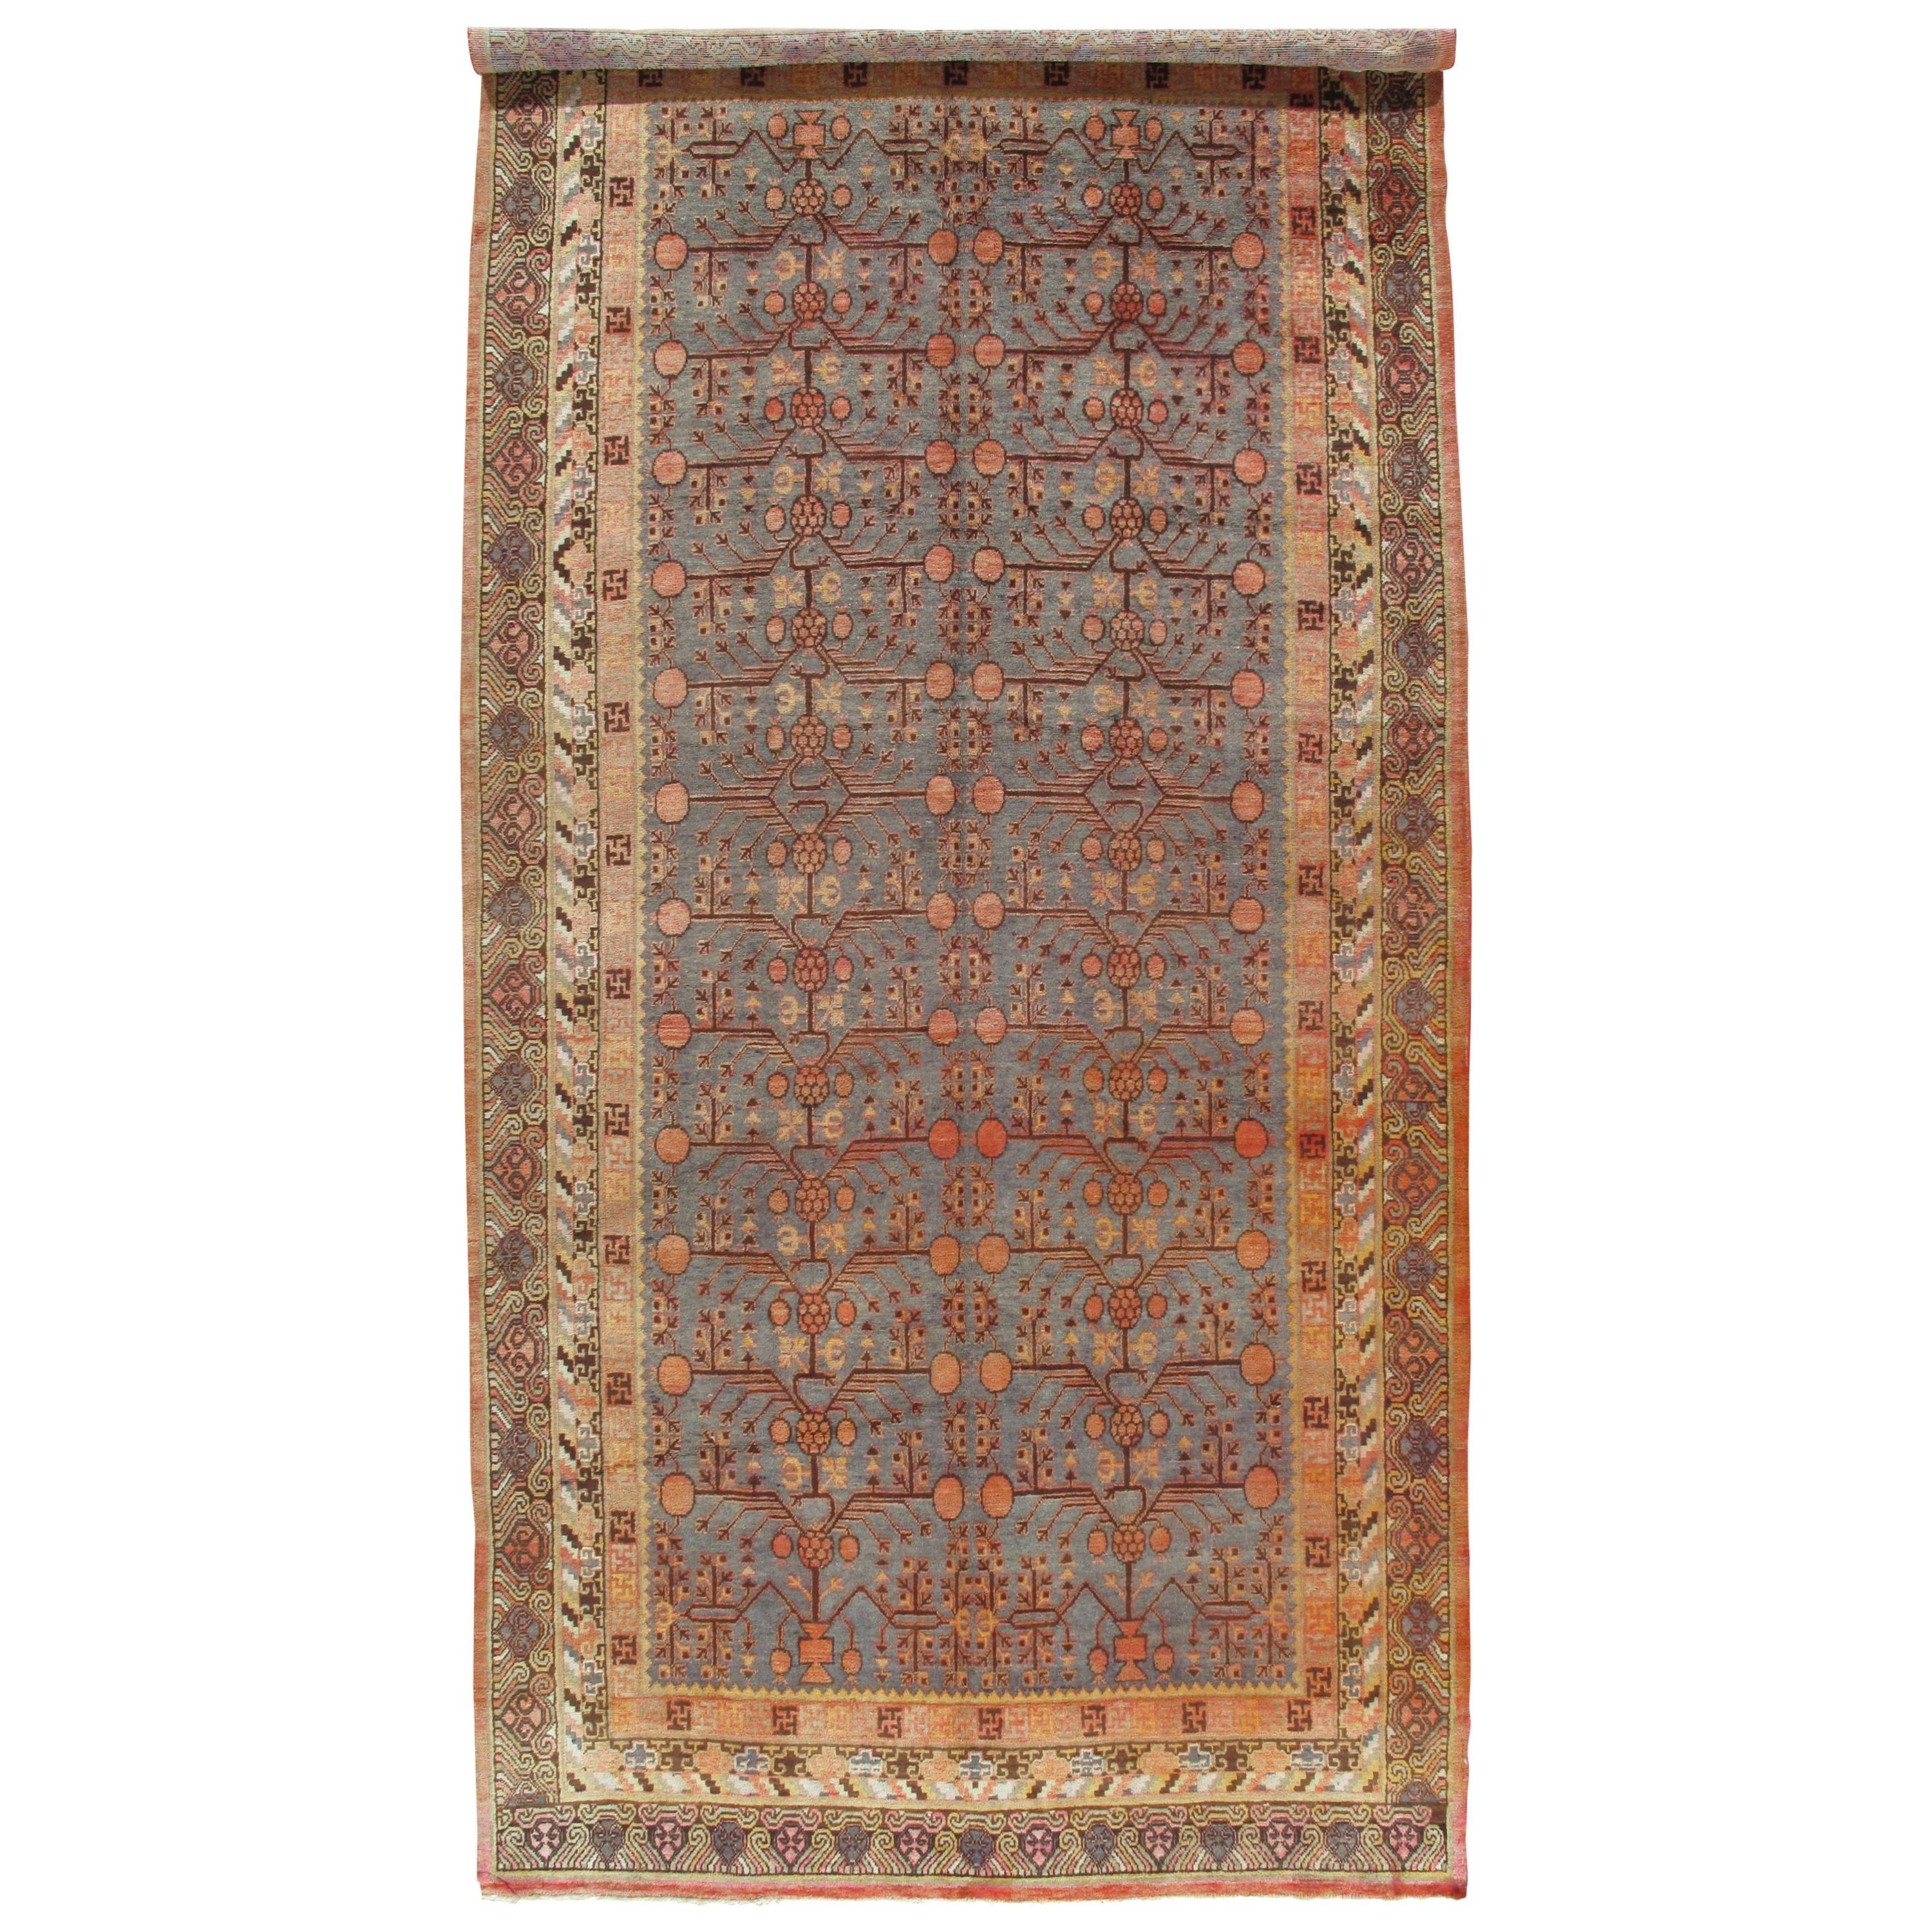 Vintage  Khotan Rug, Handmade Oriental Rug, Soft shrimp, Beige, Brown, Blue-Gray